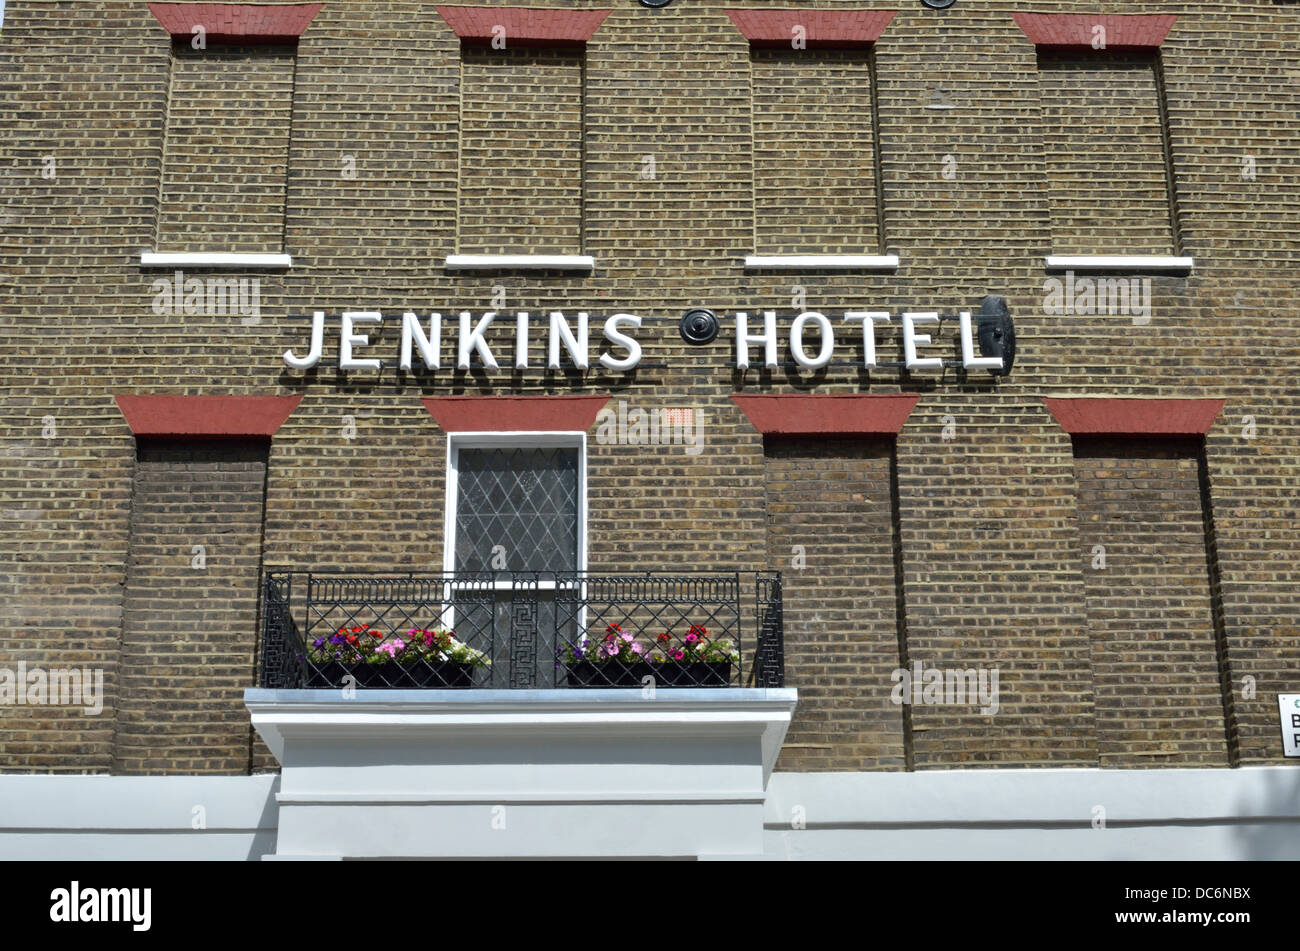 El Jenkins Hotel en King's Cross, London, UK Foto de stock